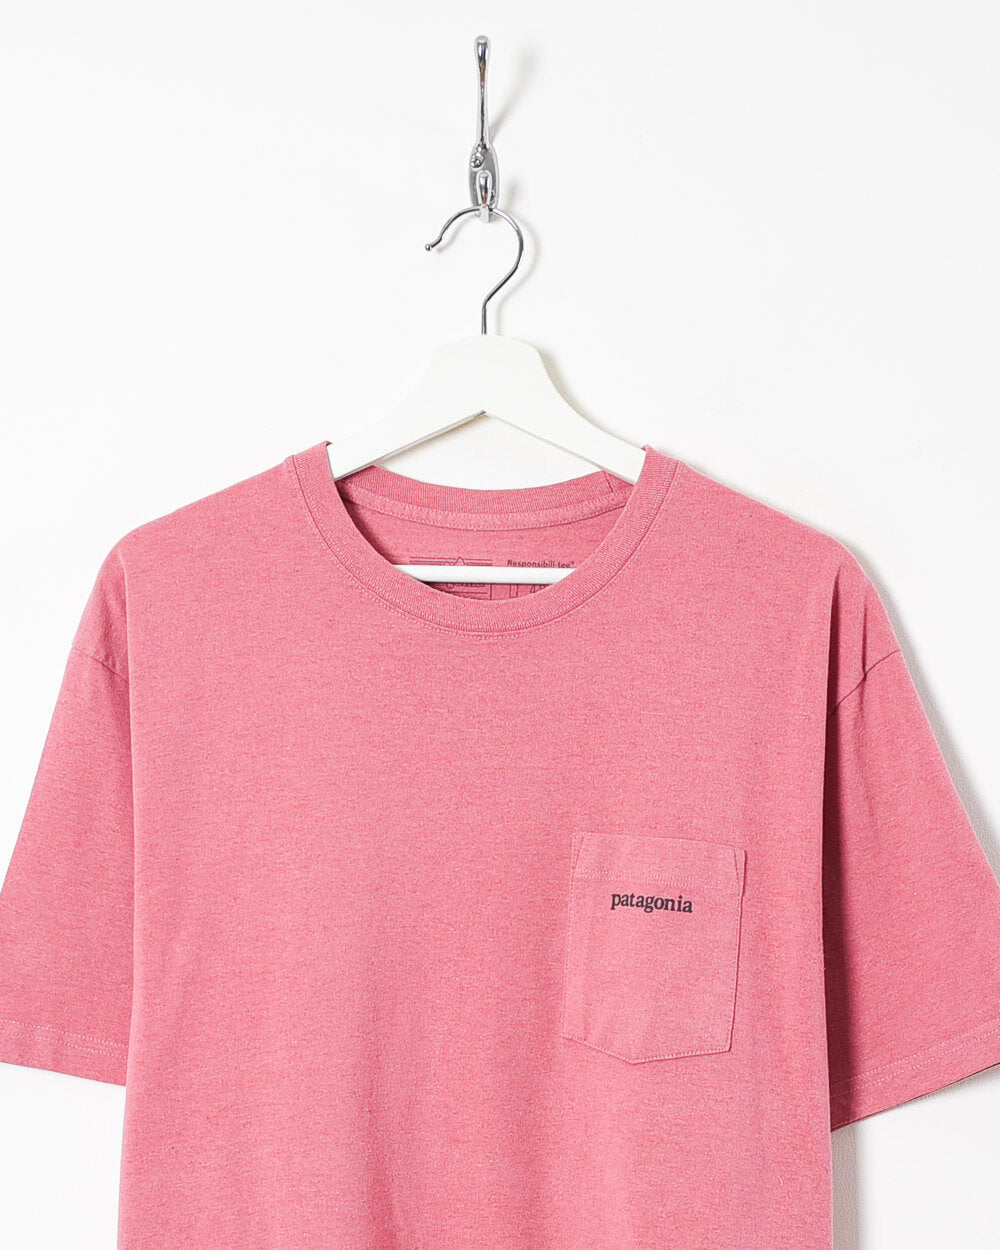 Pink Patagonia Resonsibili-tee T-Shirt - X-Large